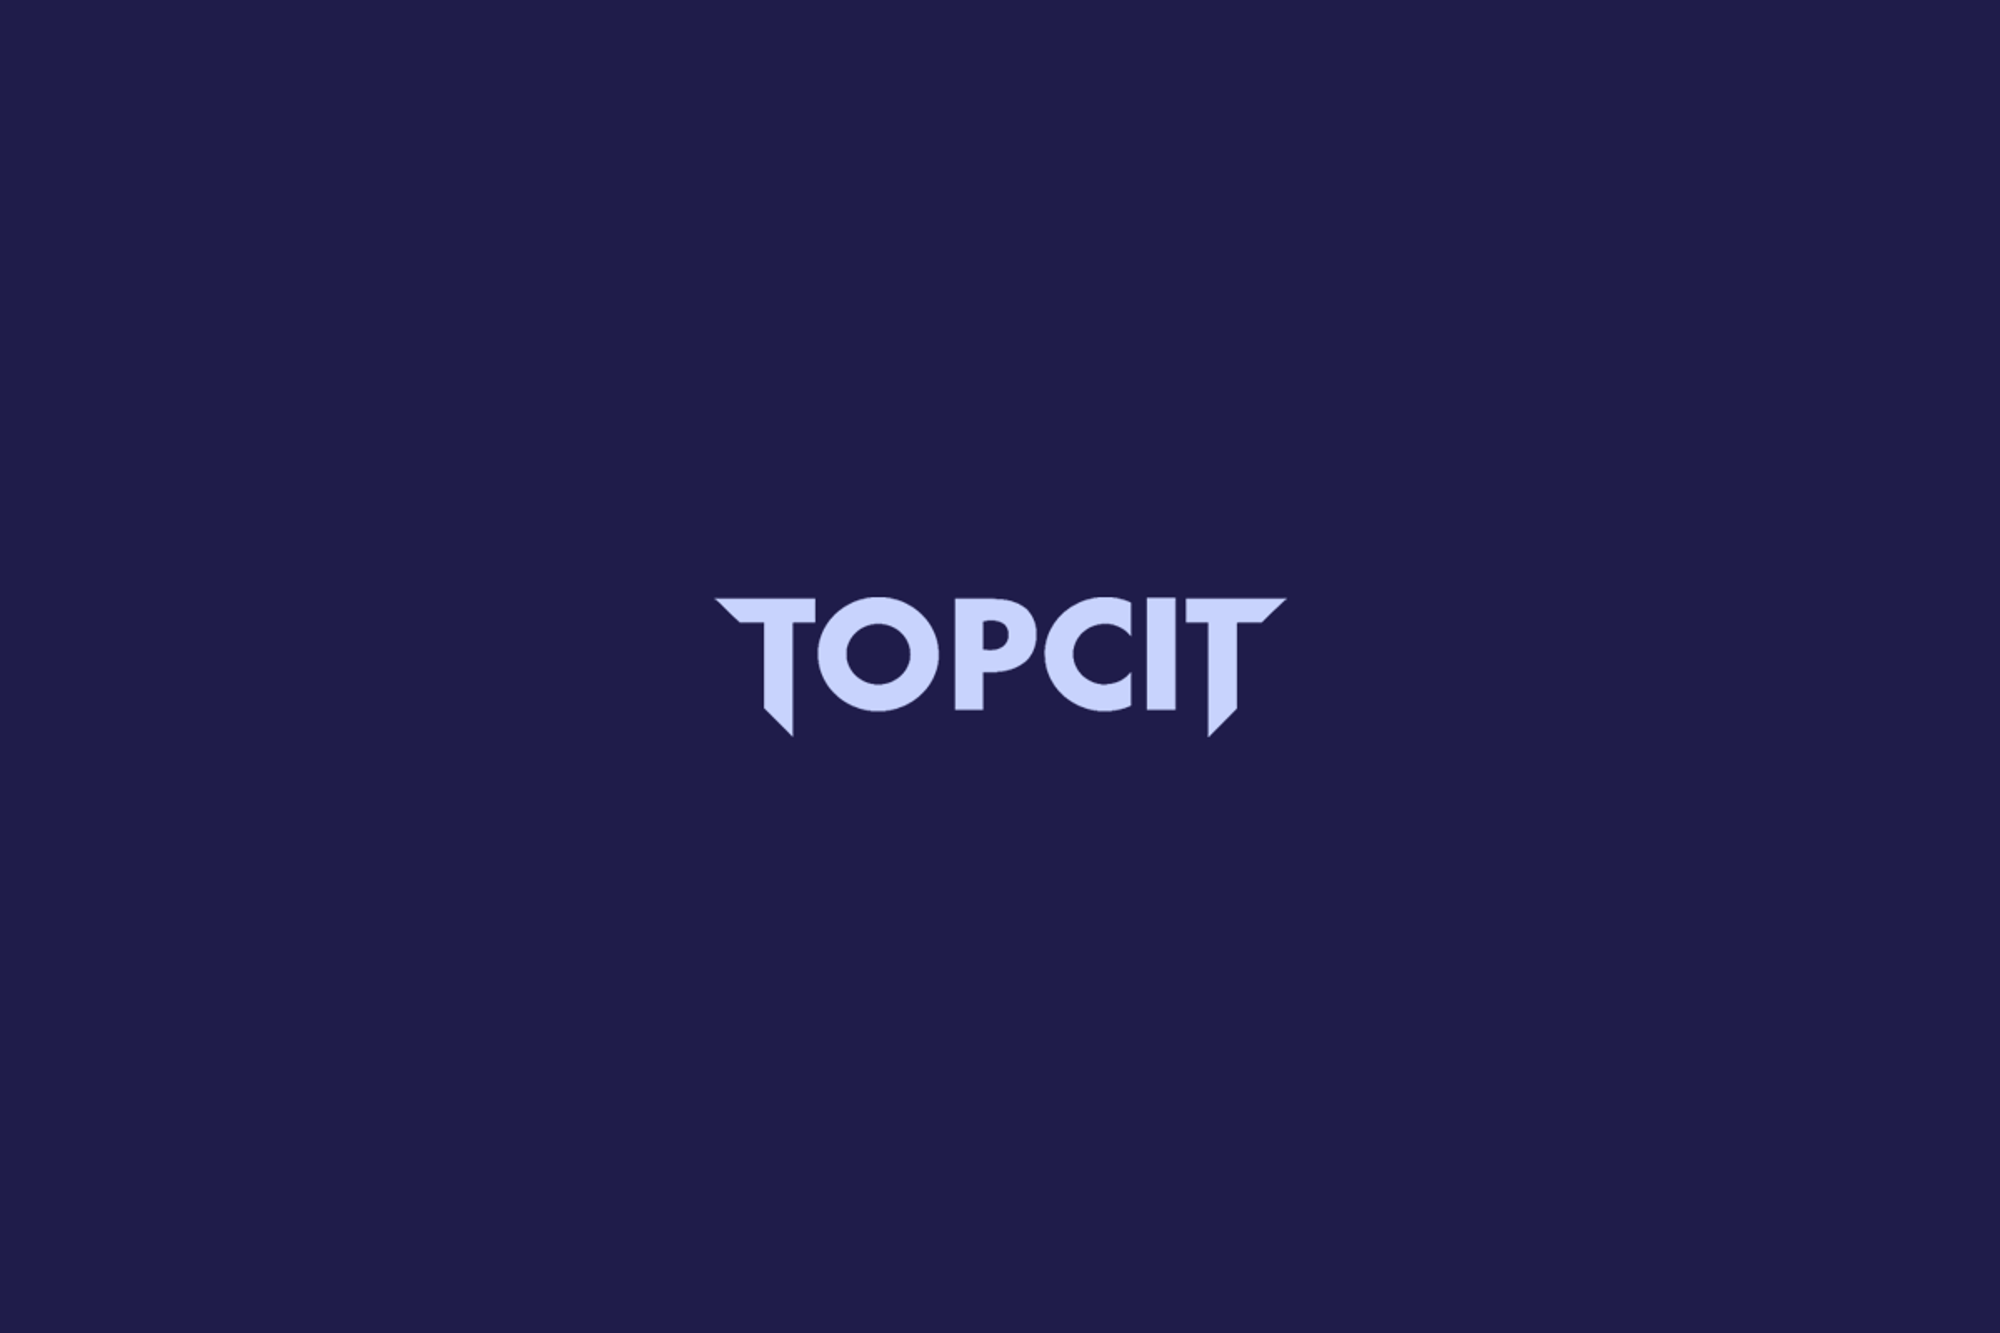 TOPCIT 요약정리 - 2. 데이터베이스